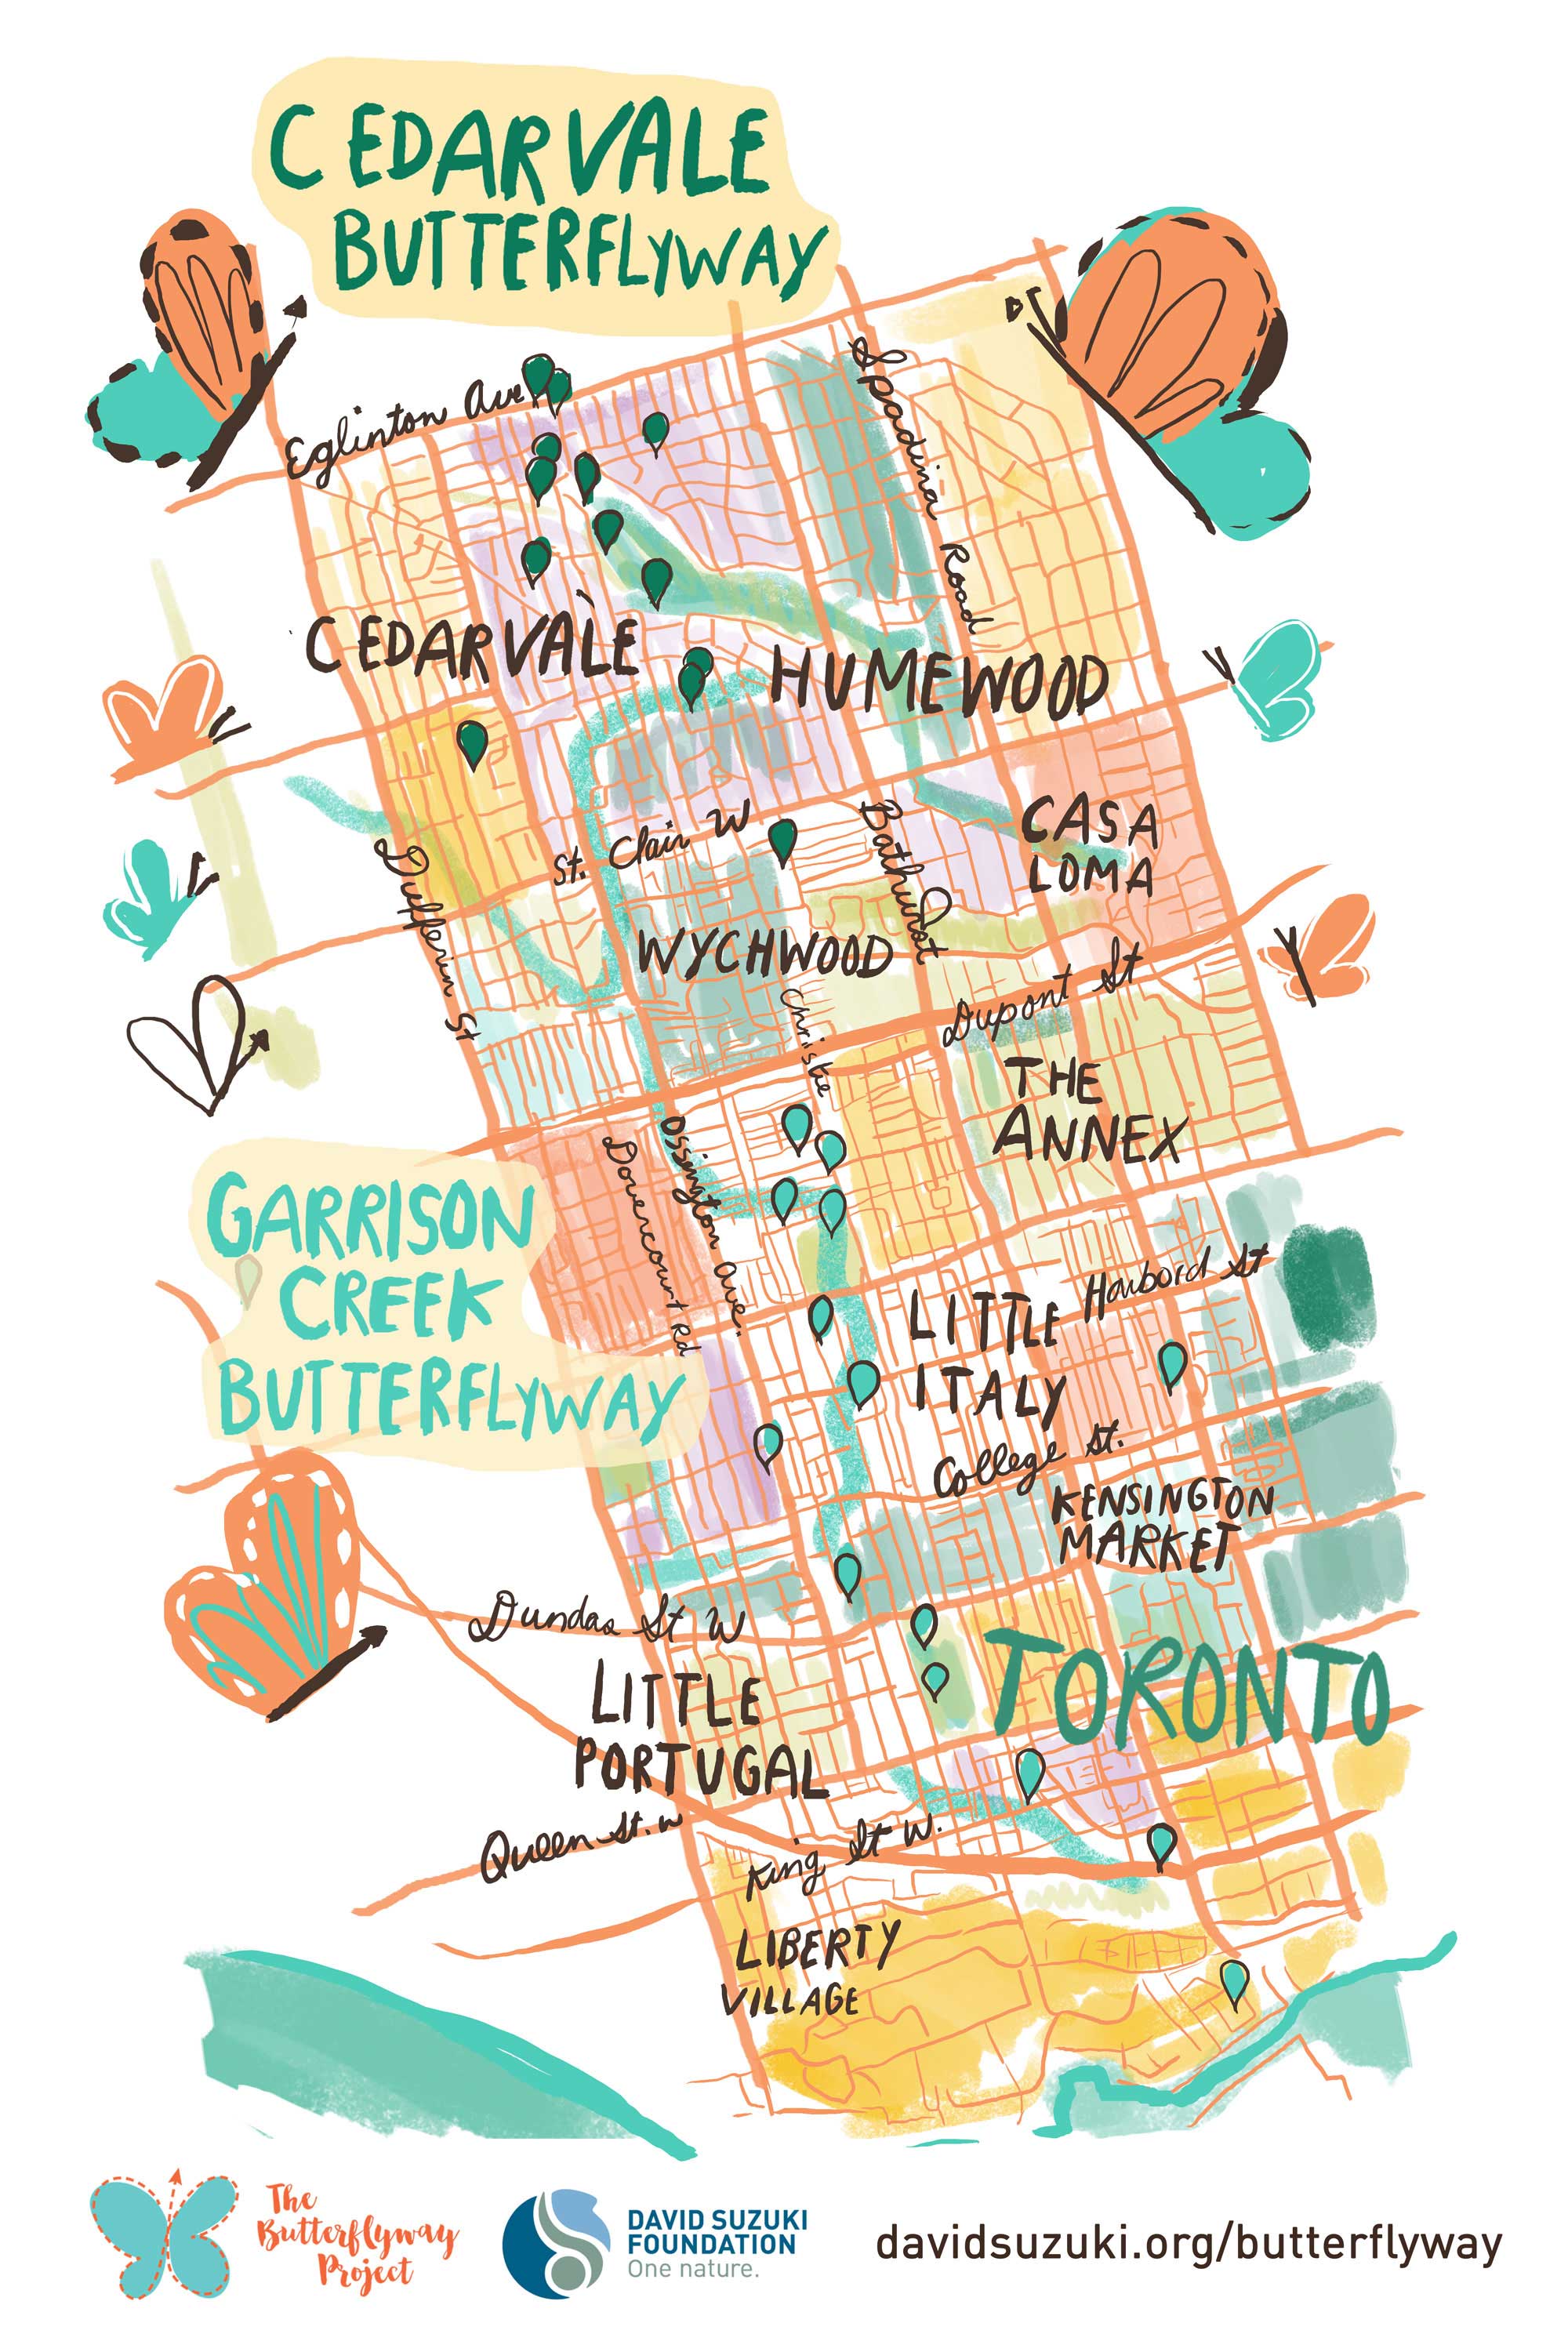 Toronto Cedarvale butterflyway map